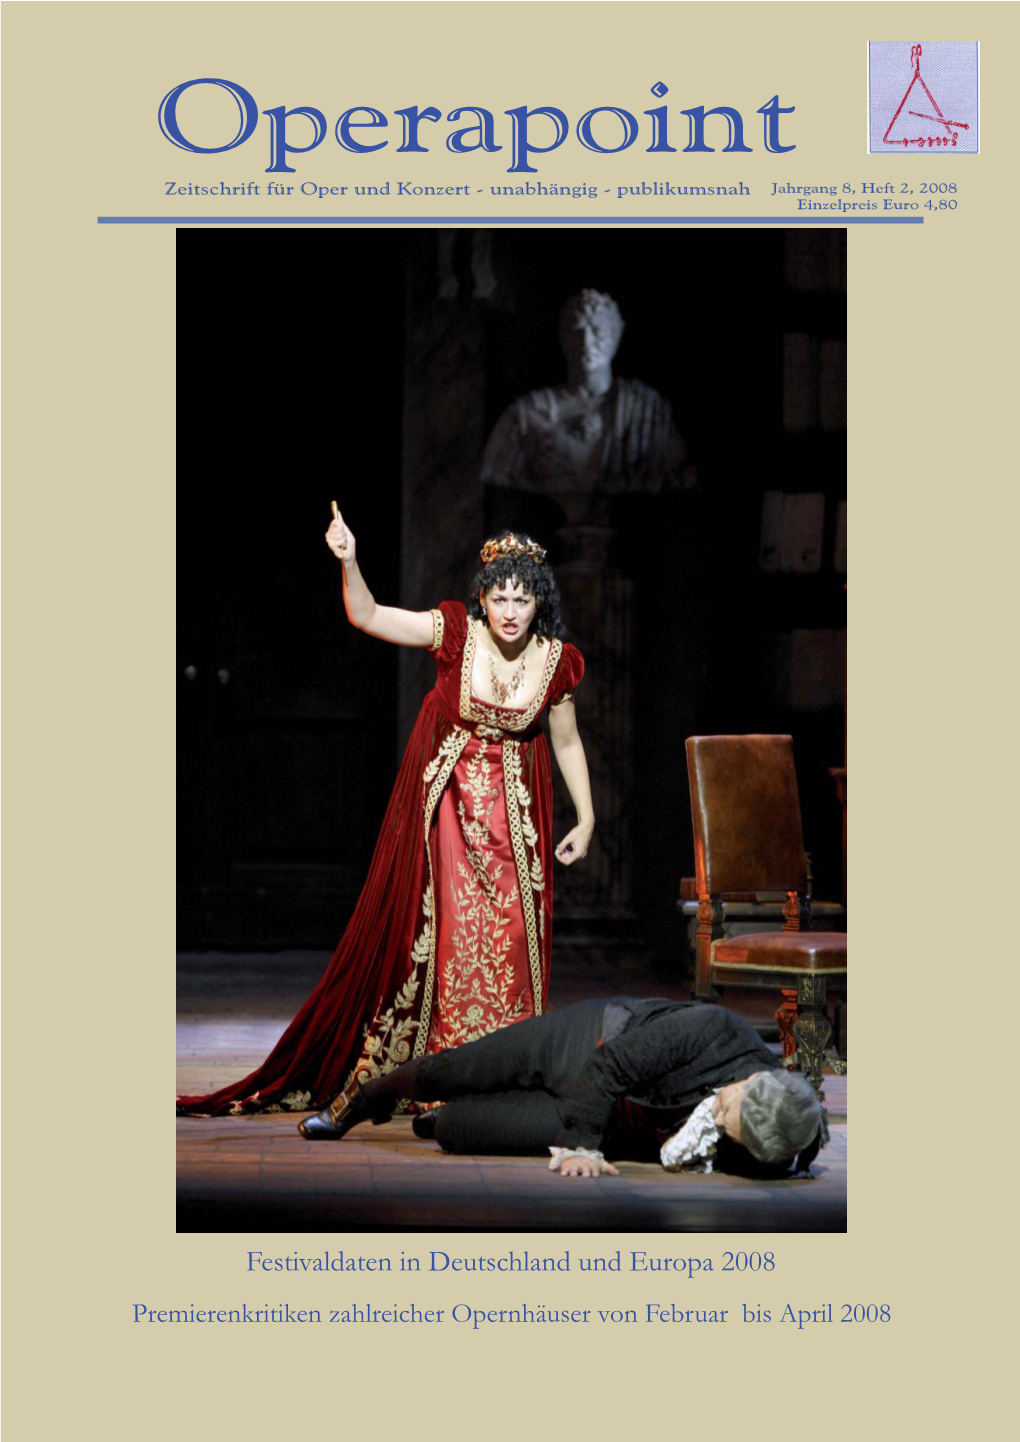 Tosca Von Giacomo Puccini Im Teatro Dell’ Opera in Rom Olaf Zenner